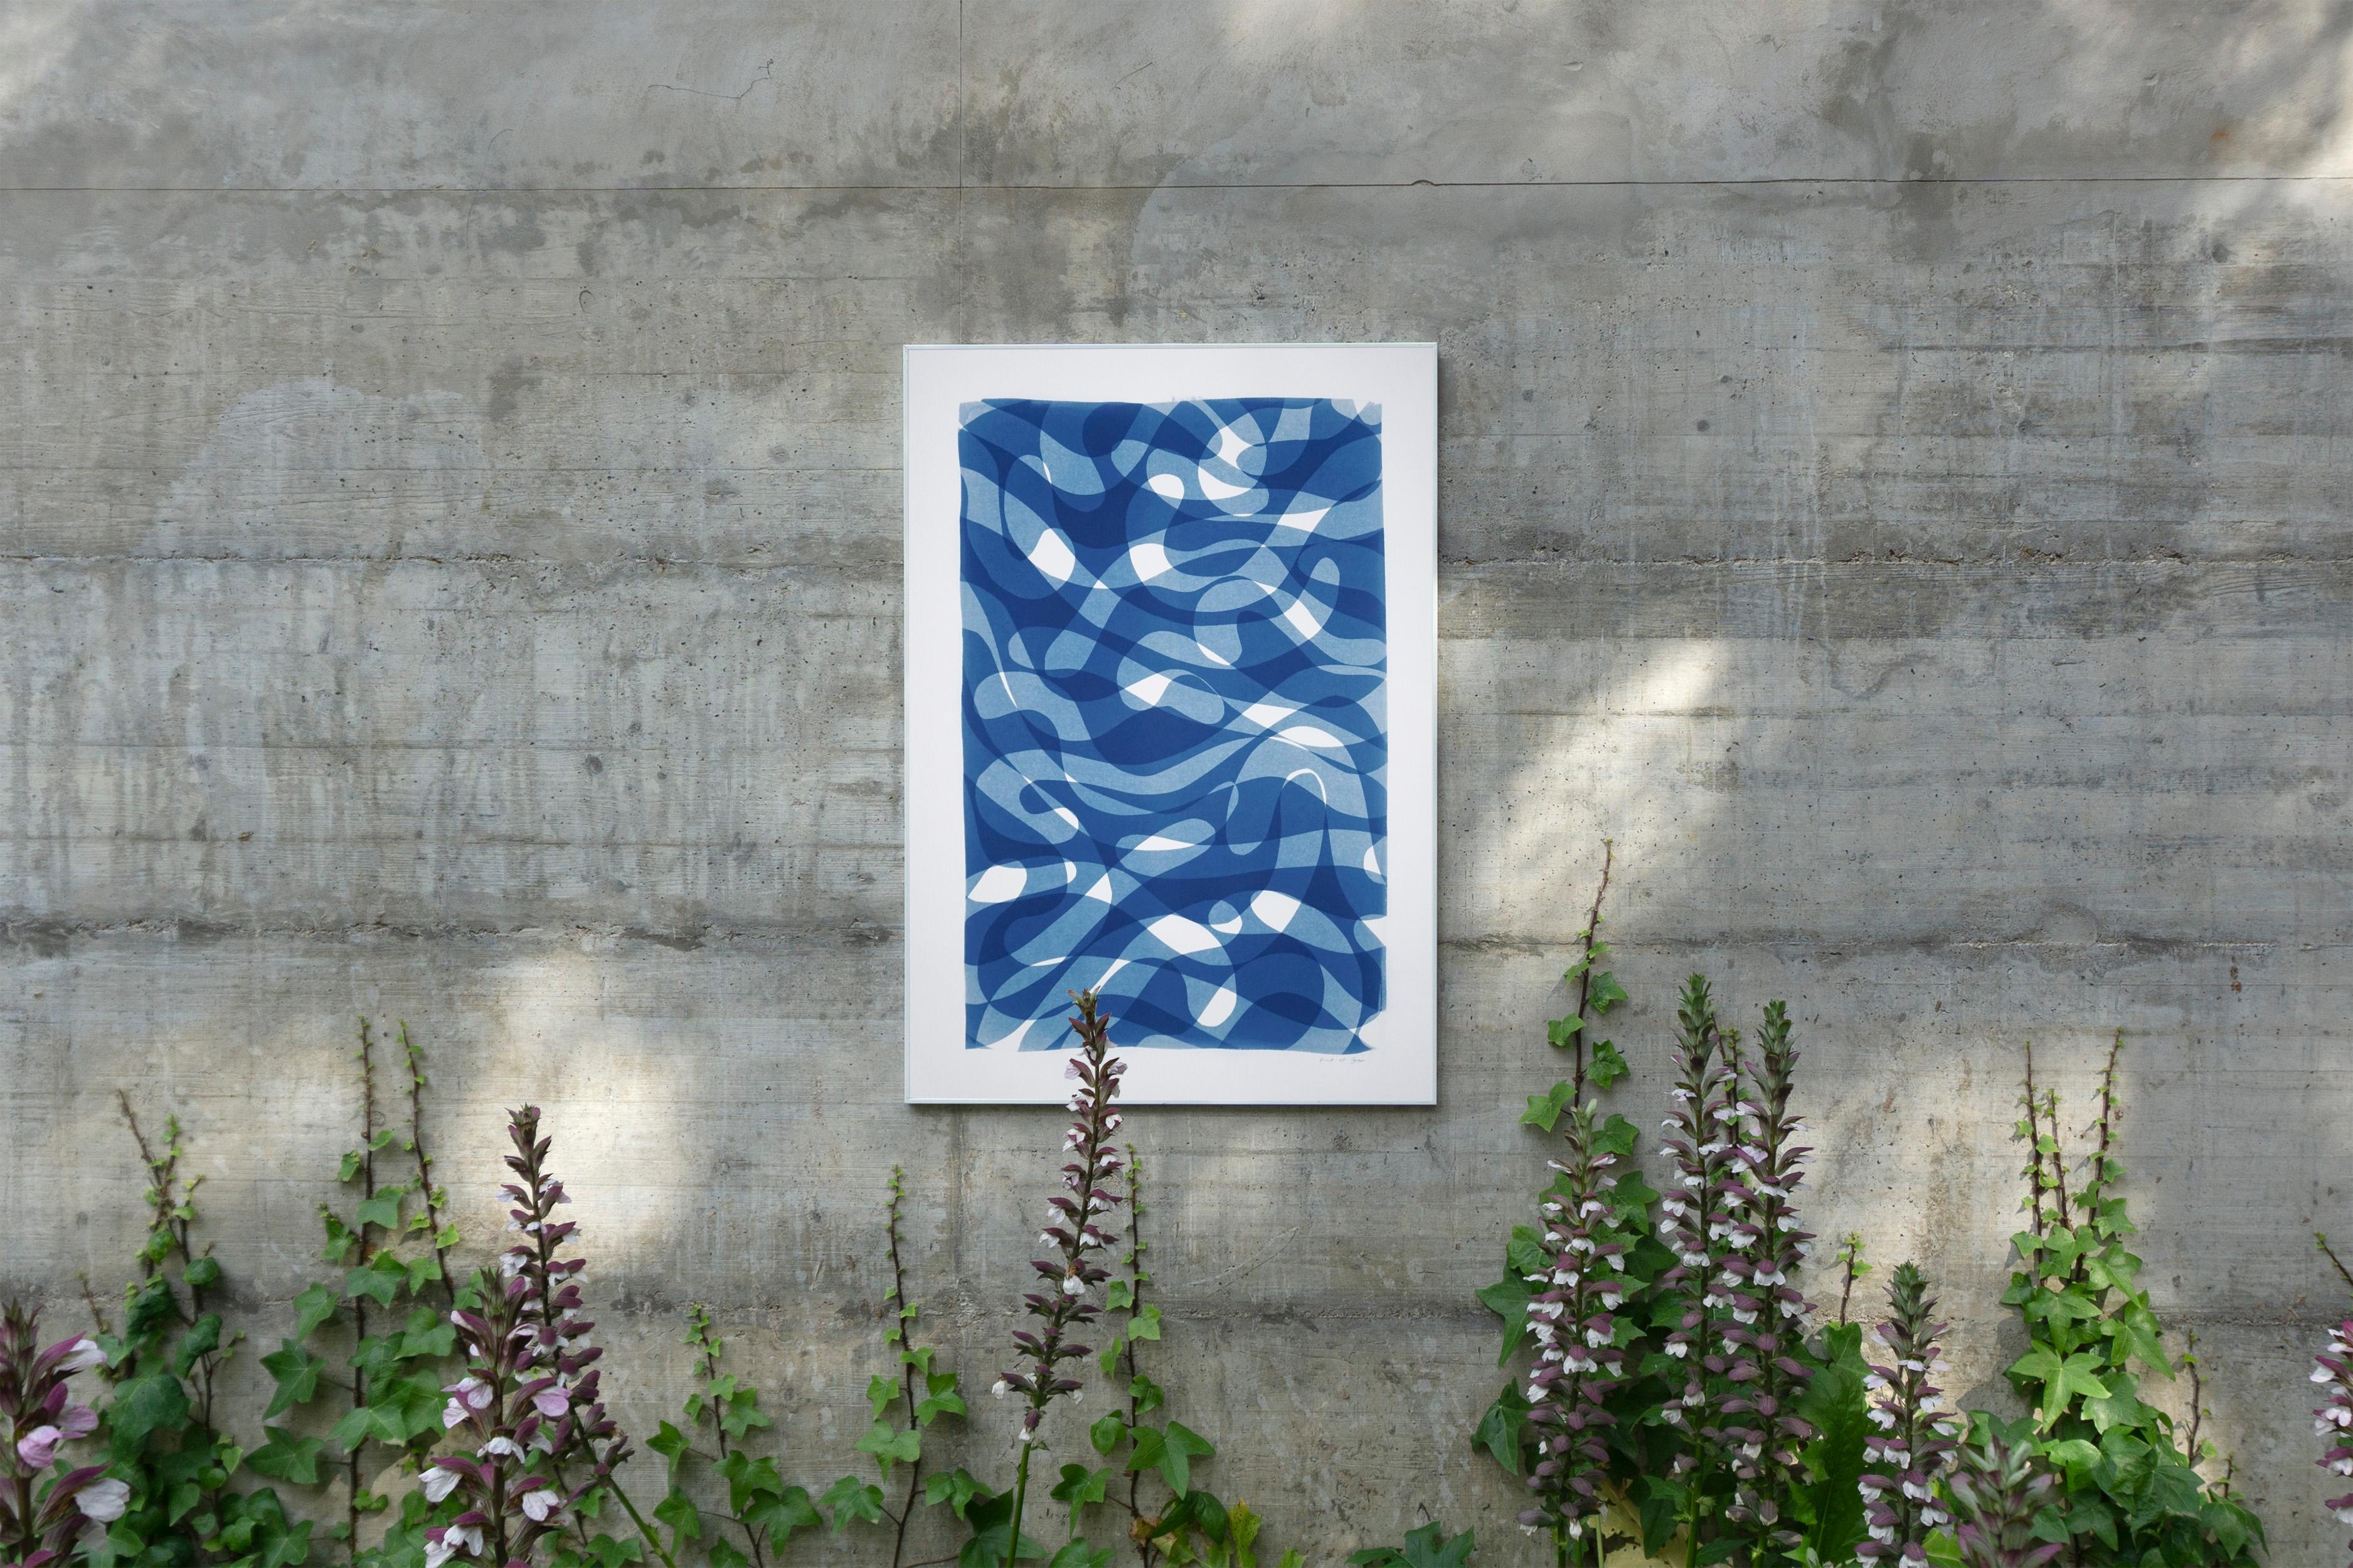 Originaldruck von geschichteten Looping-Linien, weiße und blaue Monotypie, organische Formen (Blau), Abstract Print, von Kind of Cyan